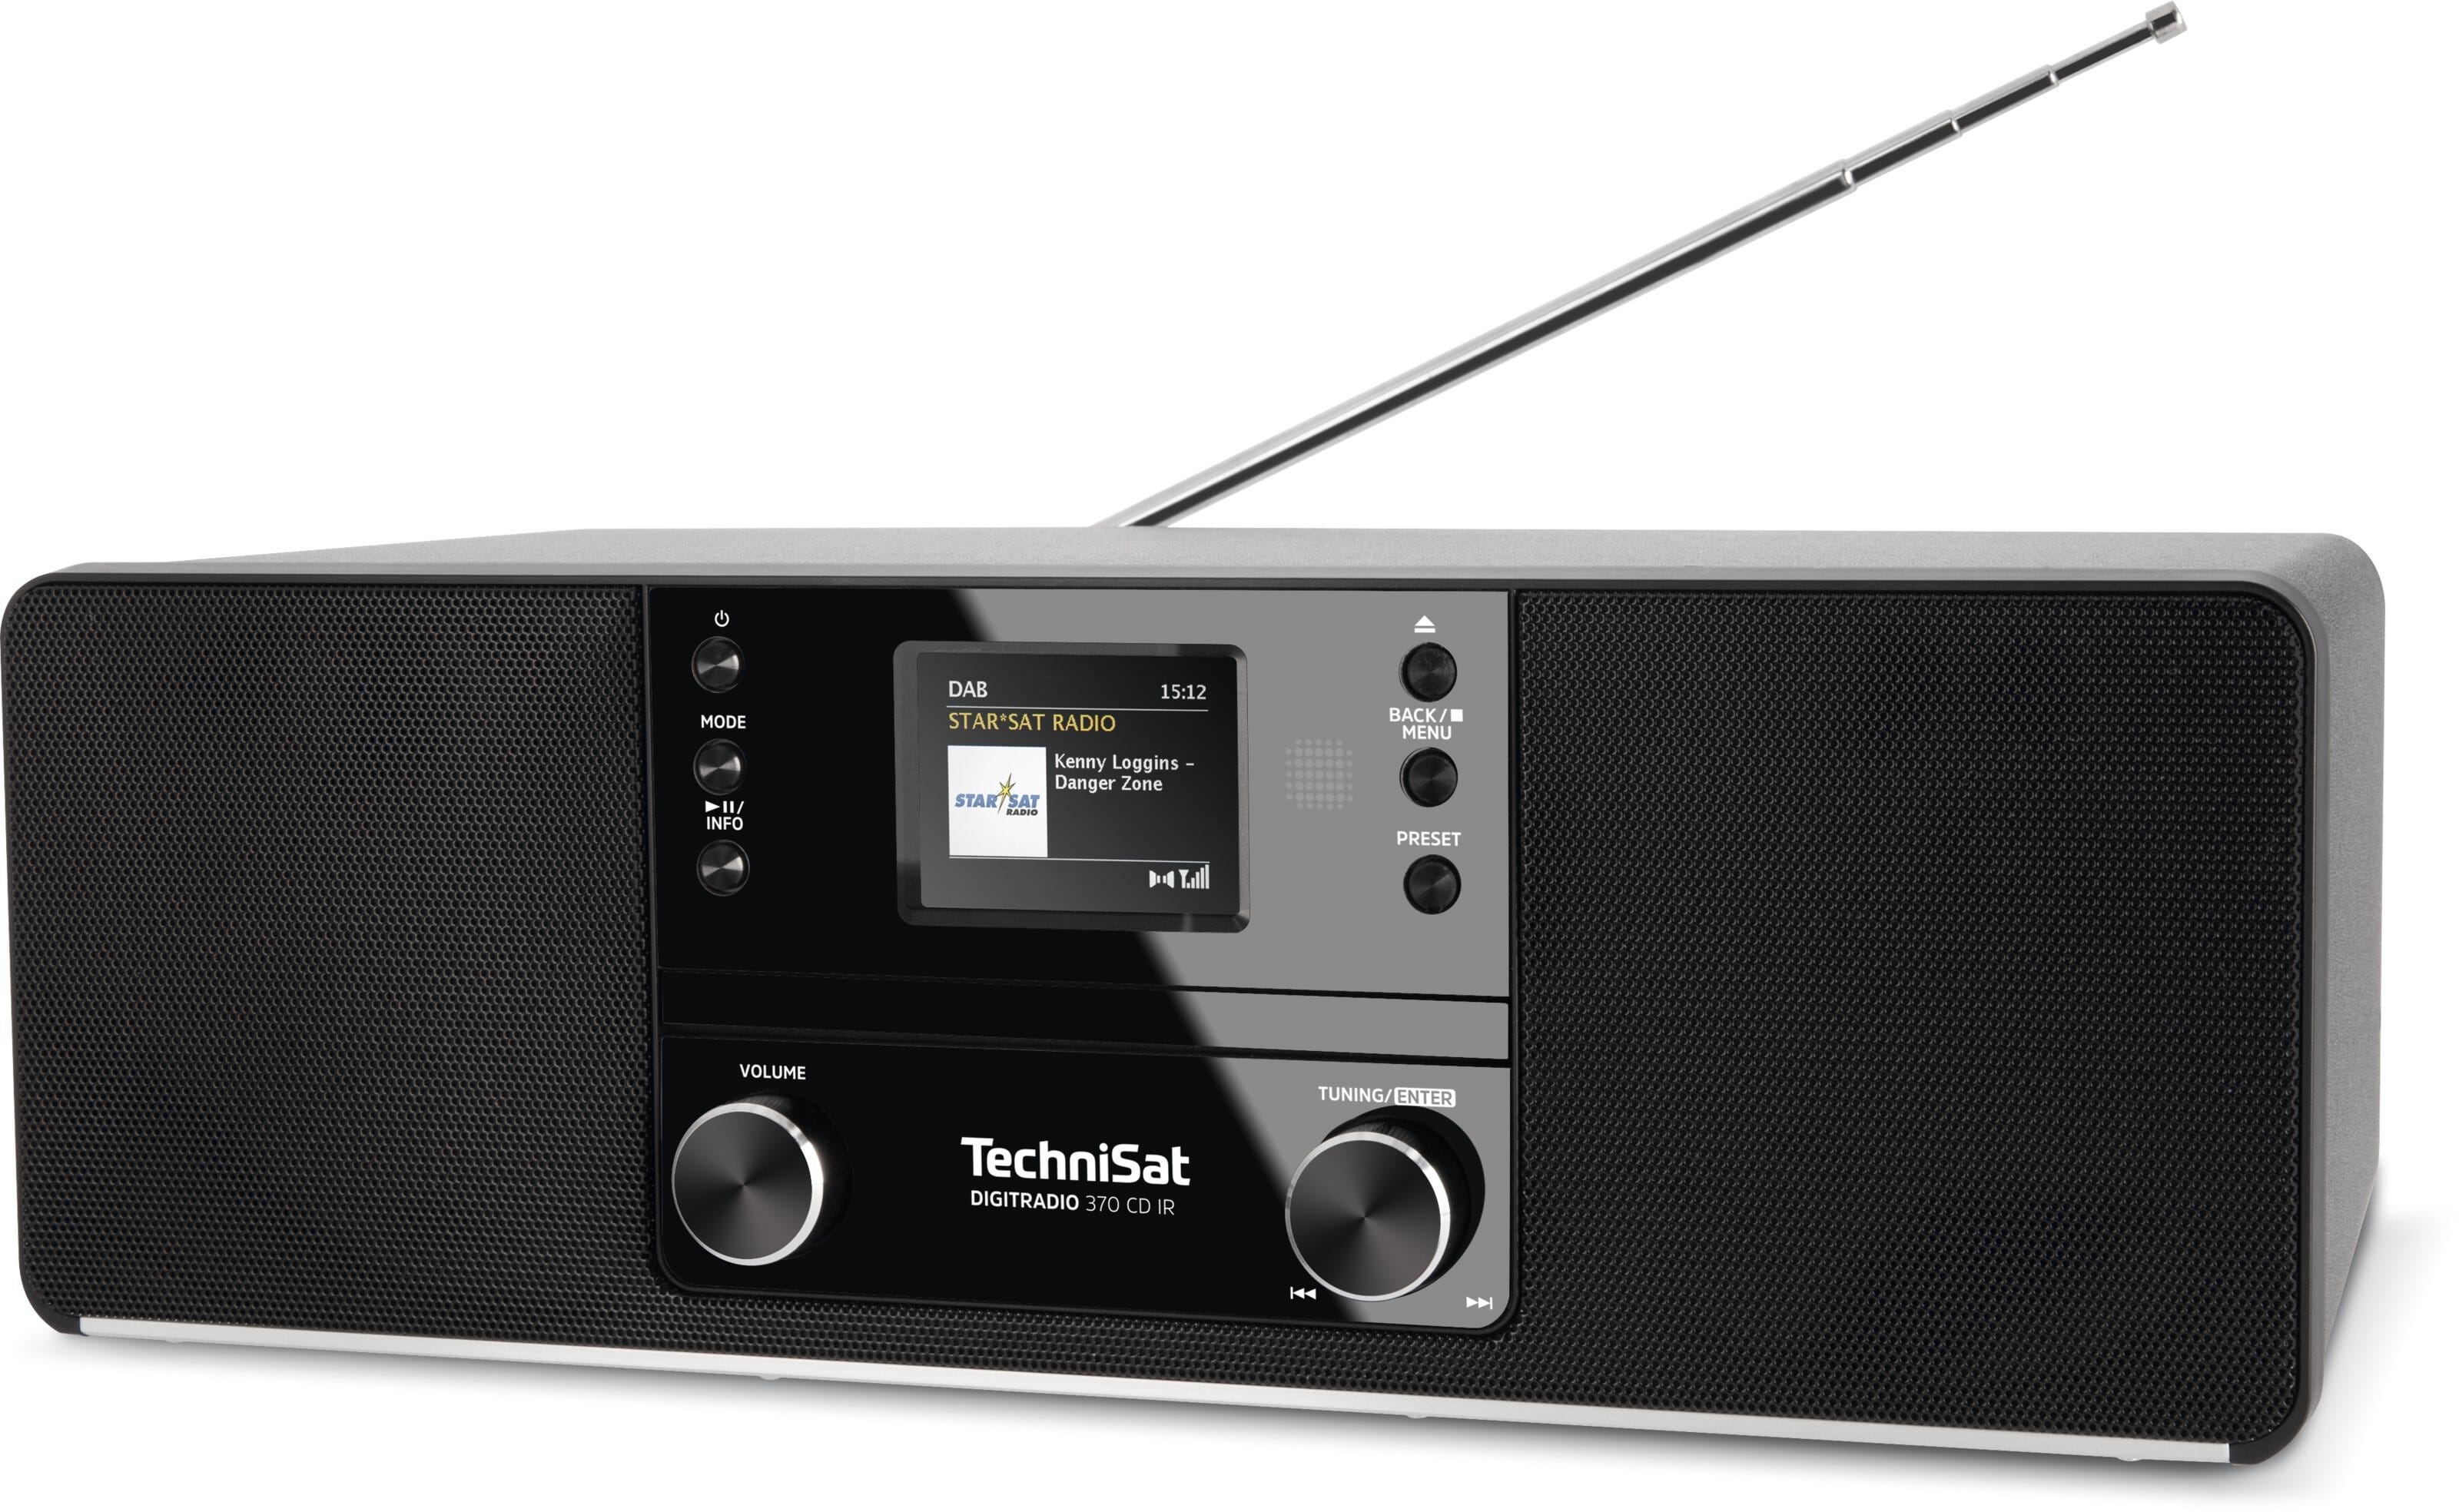 TechniSat Digitradio 370 CD IR DAB radio Zwart